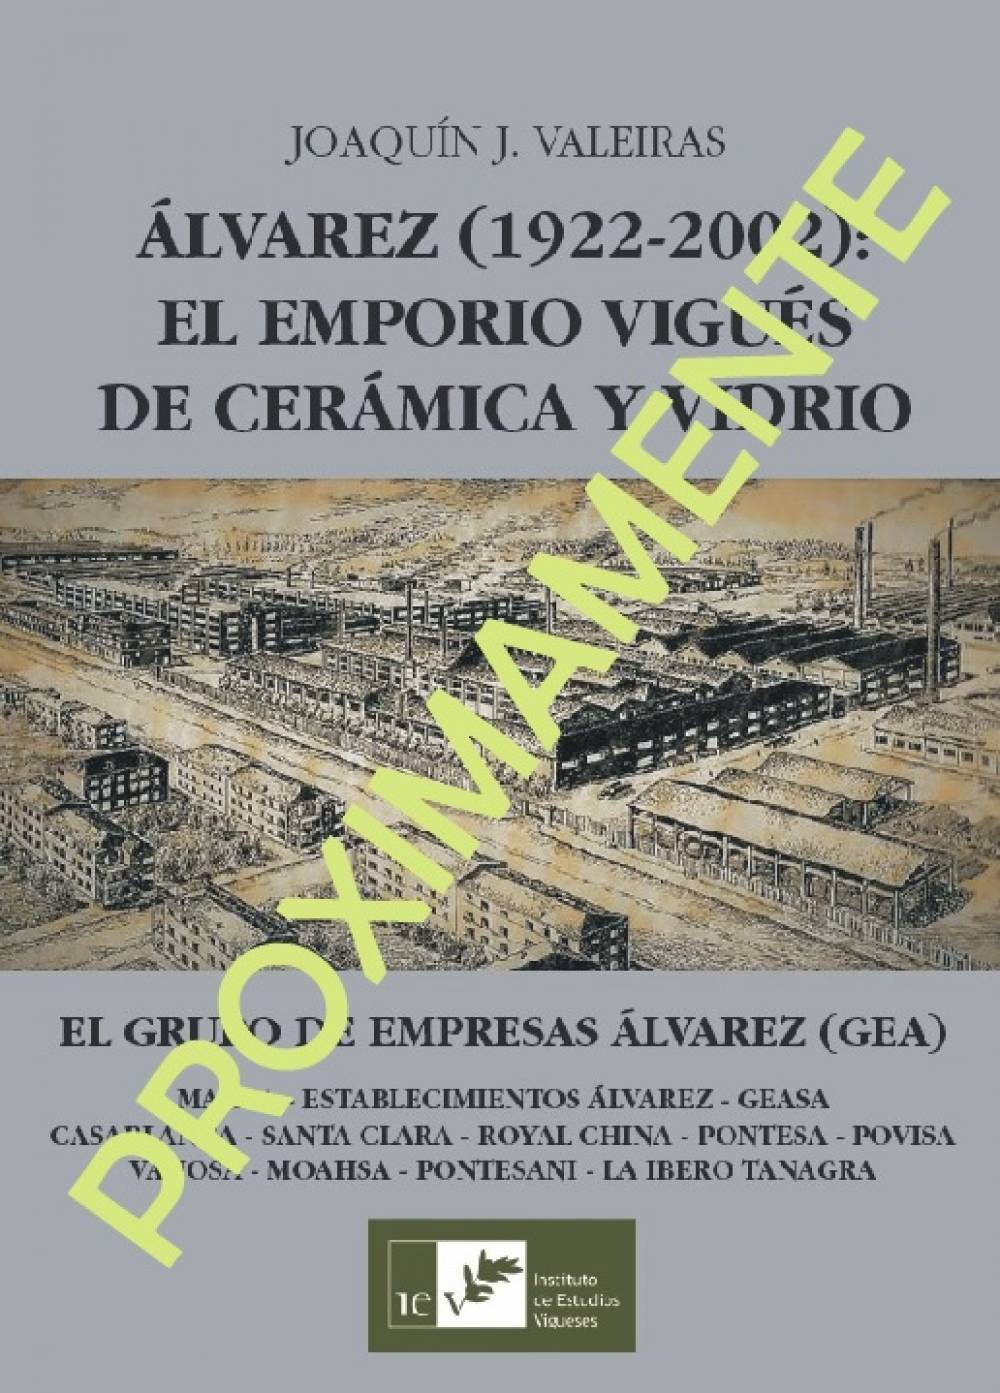 ÁLVAREZ (1922-2002): EL EMPORIO VIGUÉS DE CERÁMICA Y VIDRIO